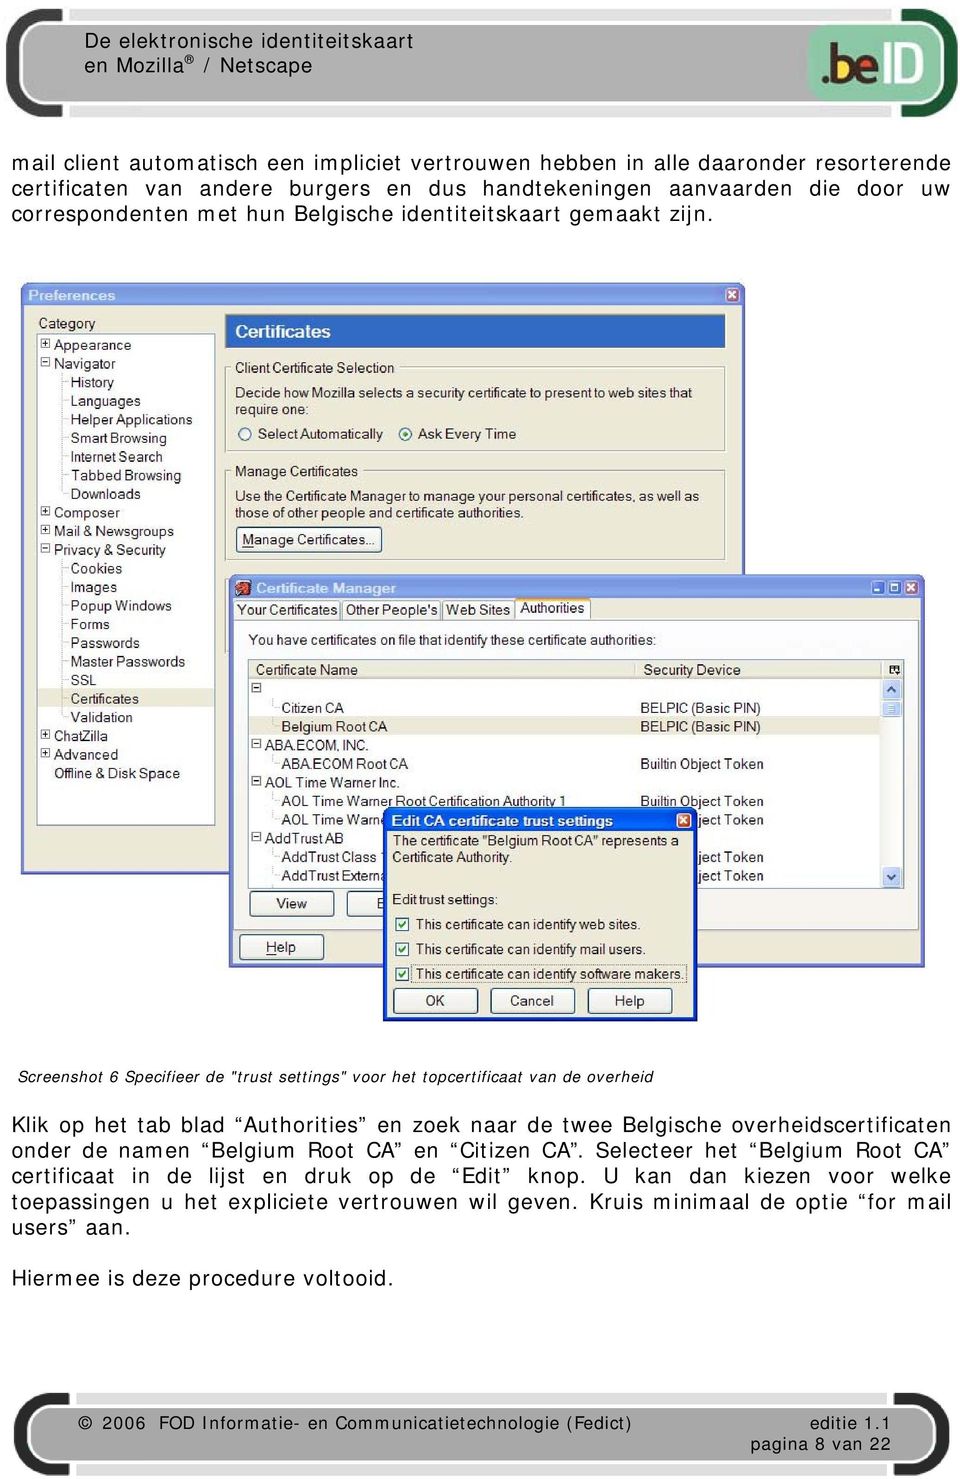 Screenshot 6 Specifieer de "trust settings" voor het topcertificaat van de overheid Klik op het tab blad Authorities en zoek naar de twee Belgische overheidscertificaten